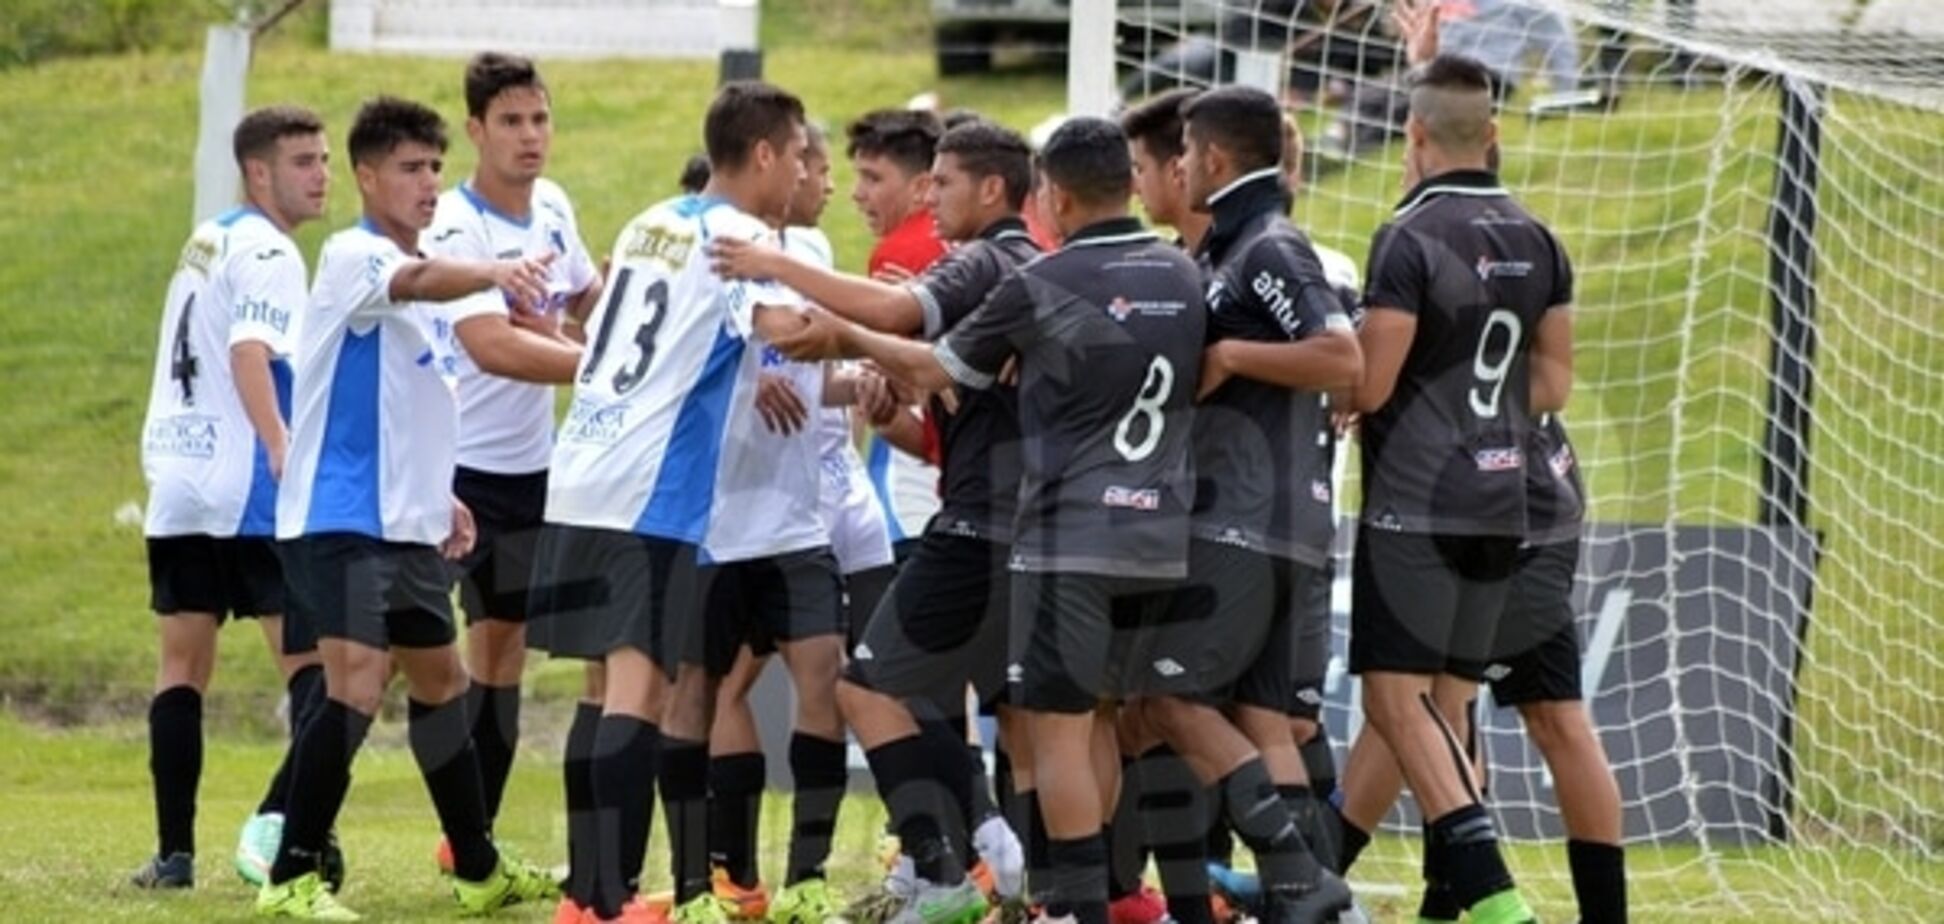 Футбольний матч юнацьких команд в Уругваї закінчився рукопашною на поле: відео інциденту